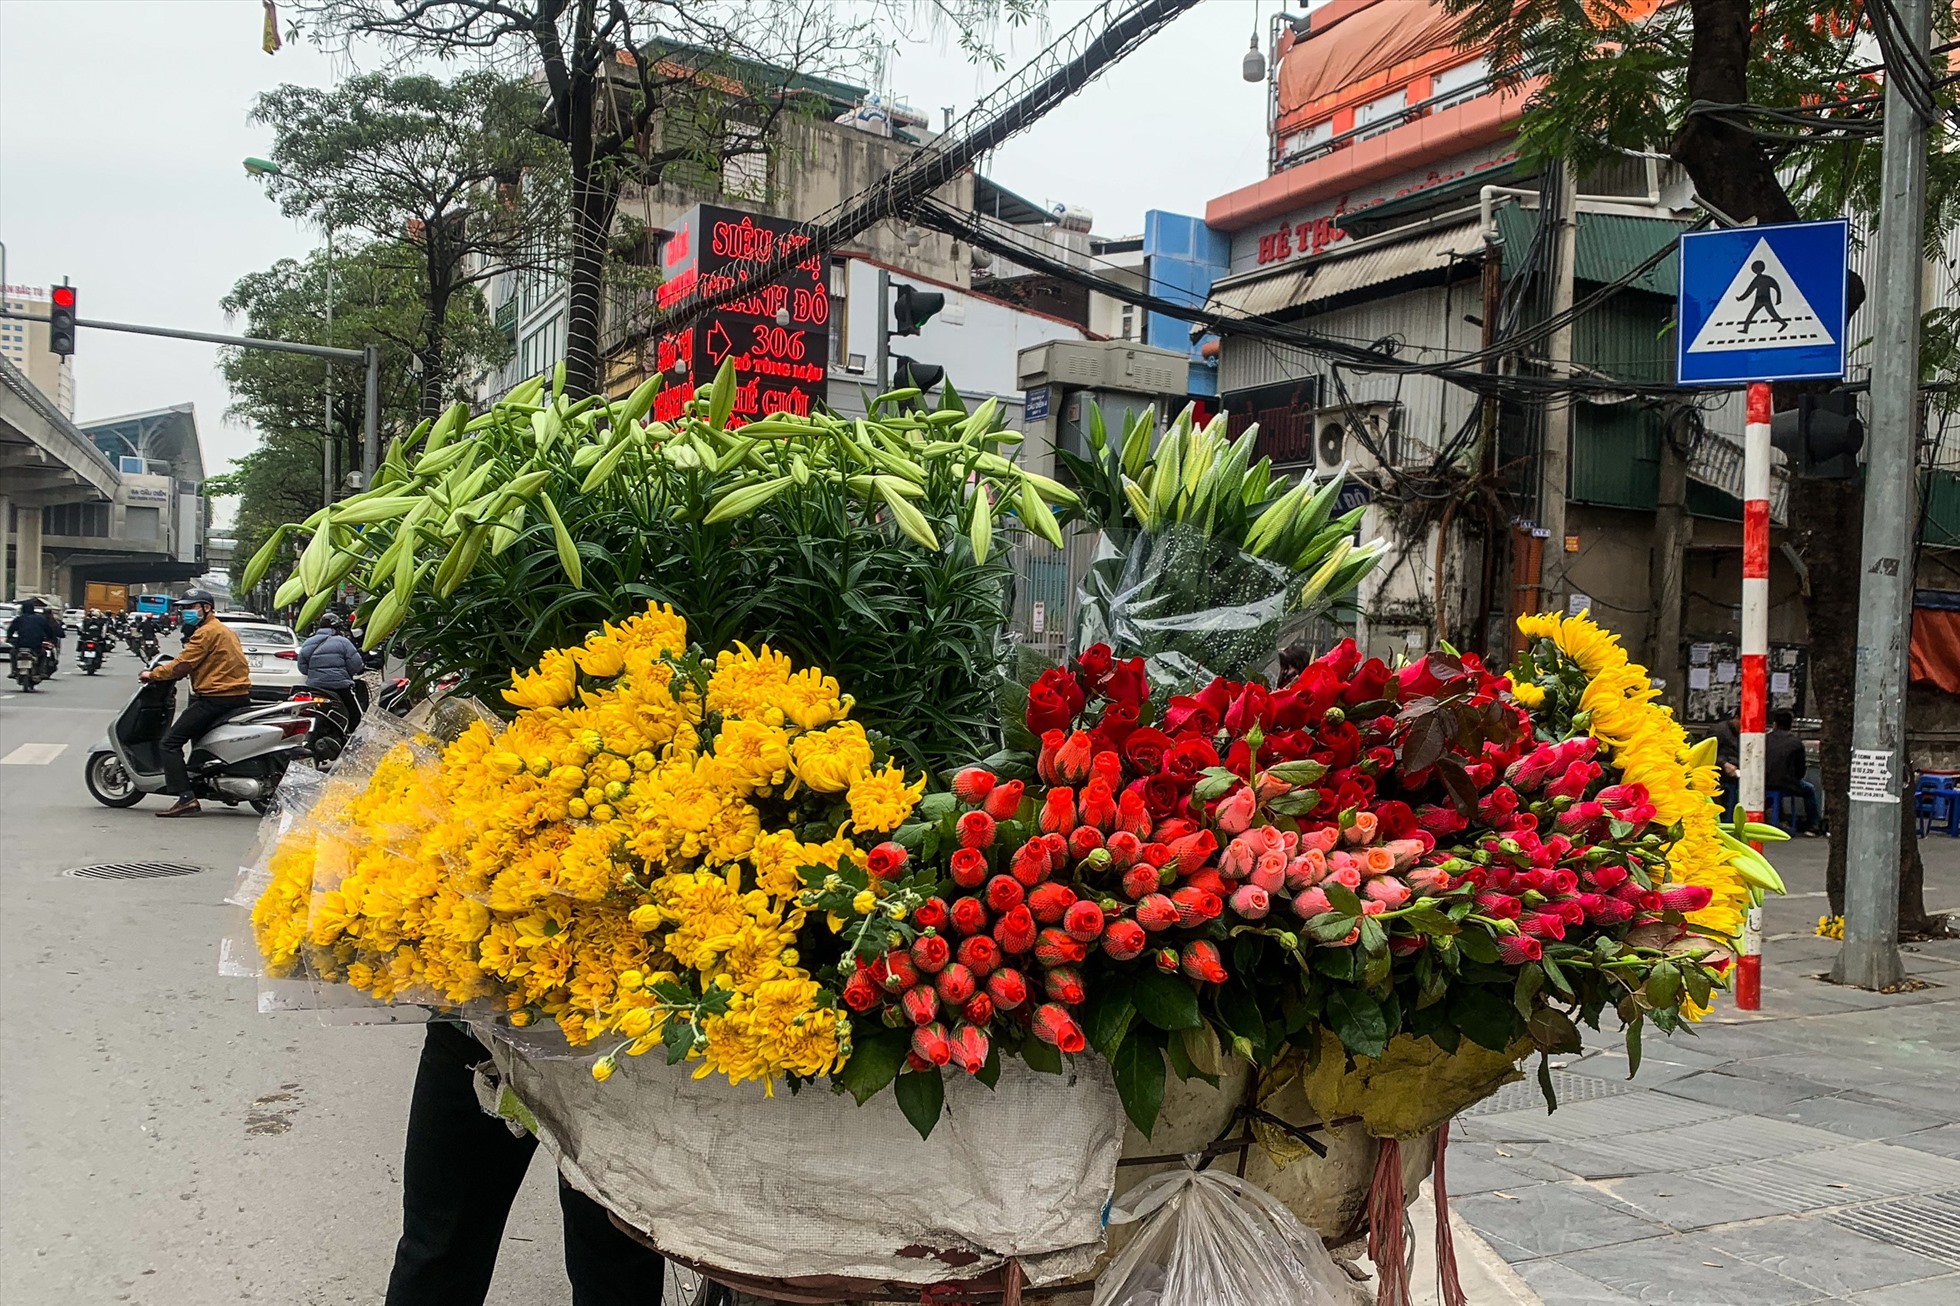 Tại khu vực nội thành, hoa loa kèn được bán nhiều trên phố Thụy Khuê, Cầu Diễn, Mai Xuân Thưởng, Phan Đình Phùng...